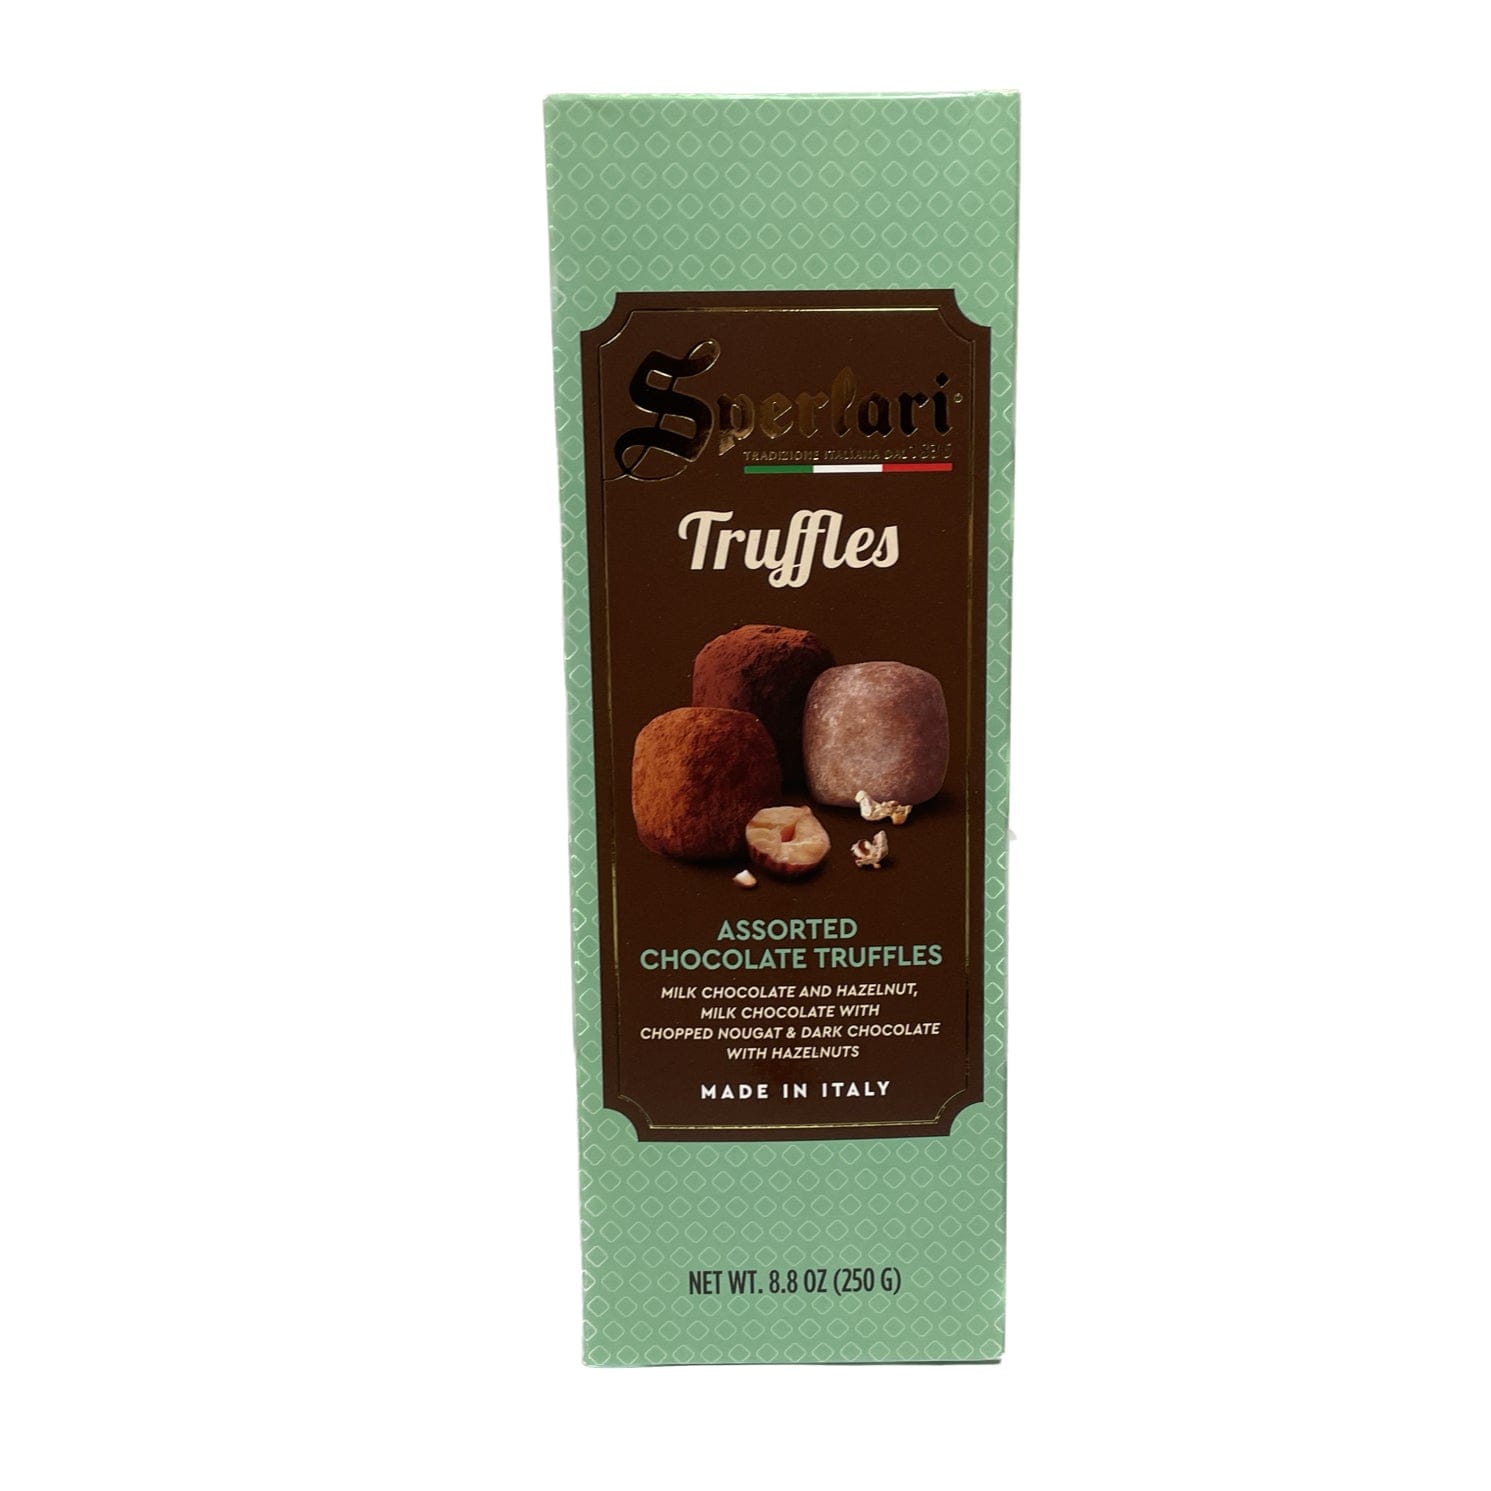 Gourmet International Sperlari - Assorted Chocolate Truffles Gift Box